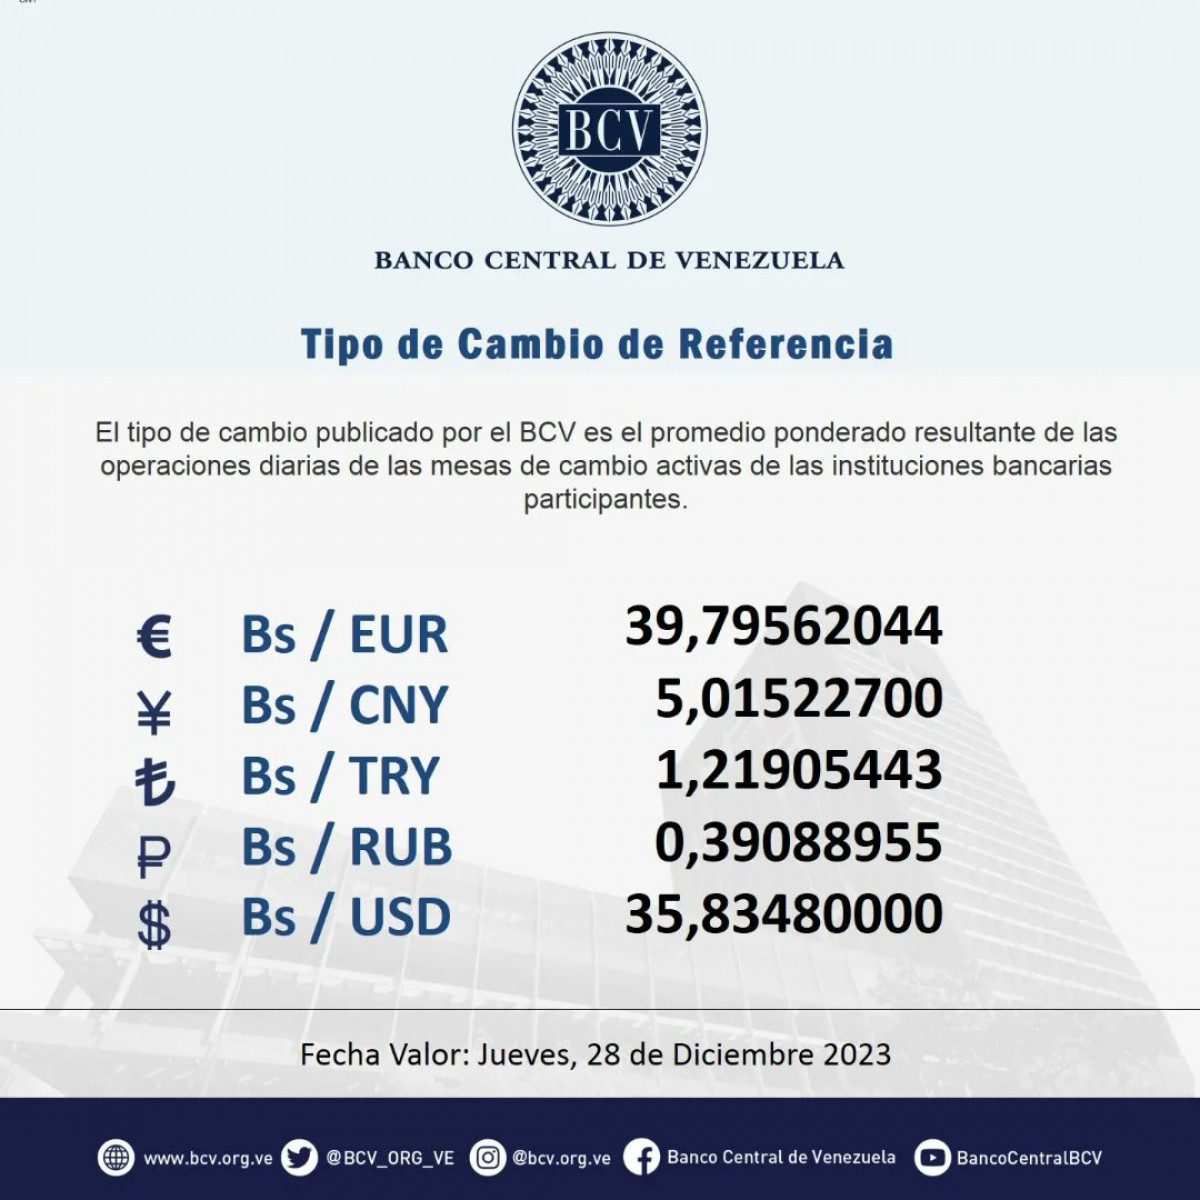 dolartoday en venezuela precio del dolar este jueves 28 de diciembre de 2023 laverdaddemonagas.com bcv534